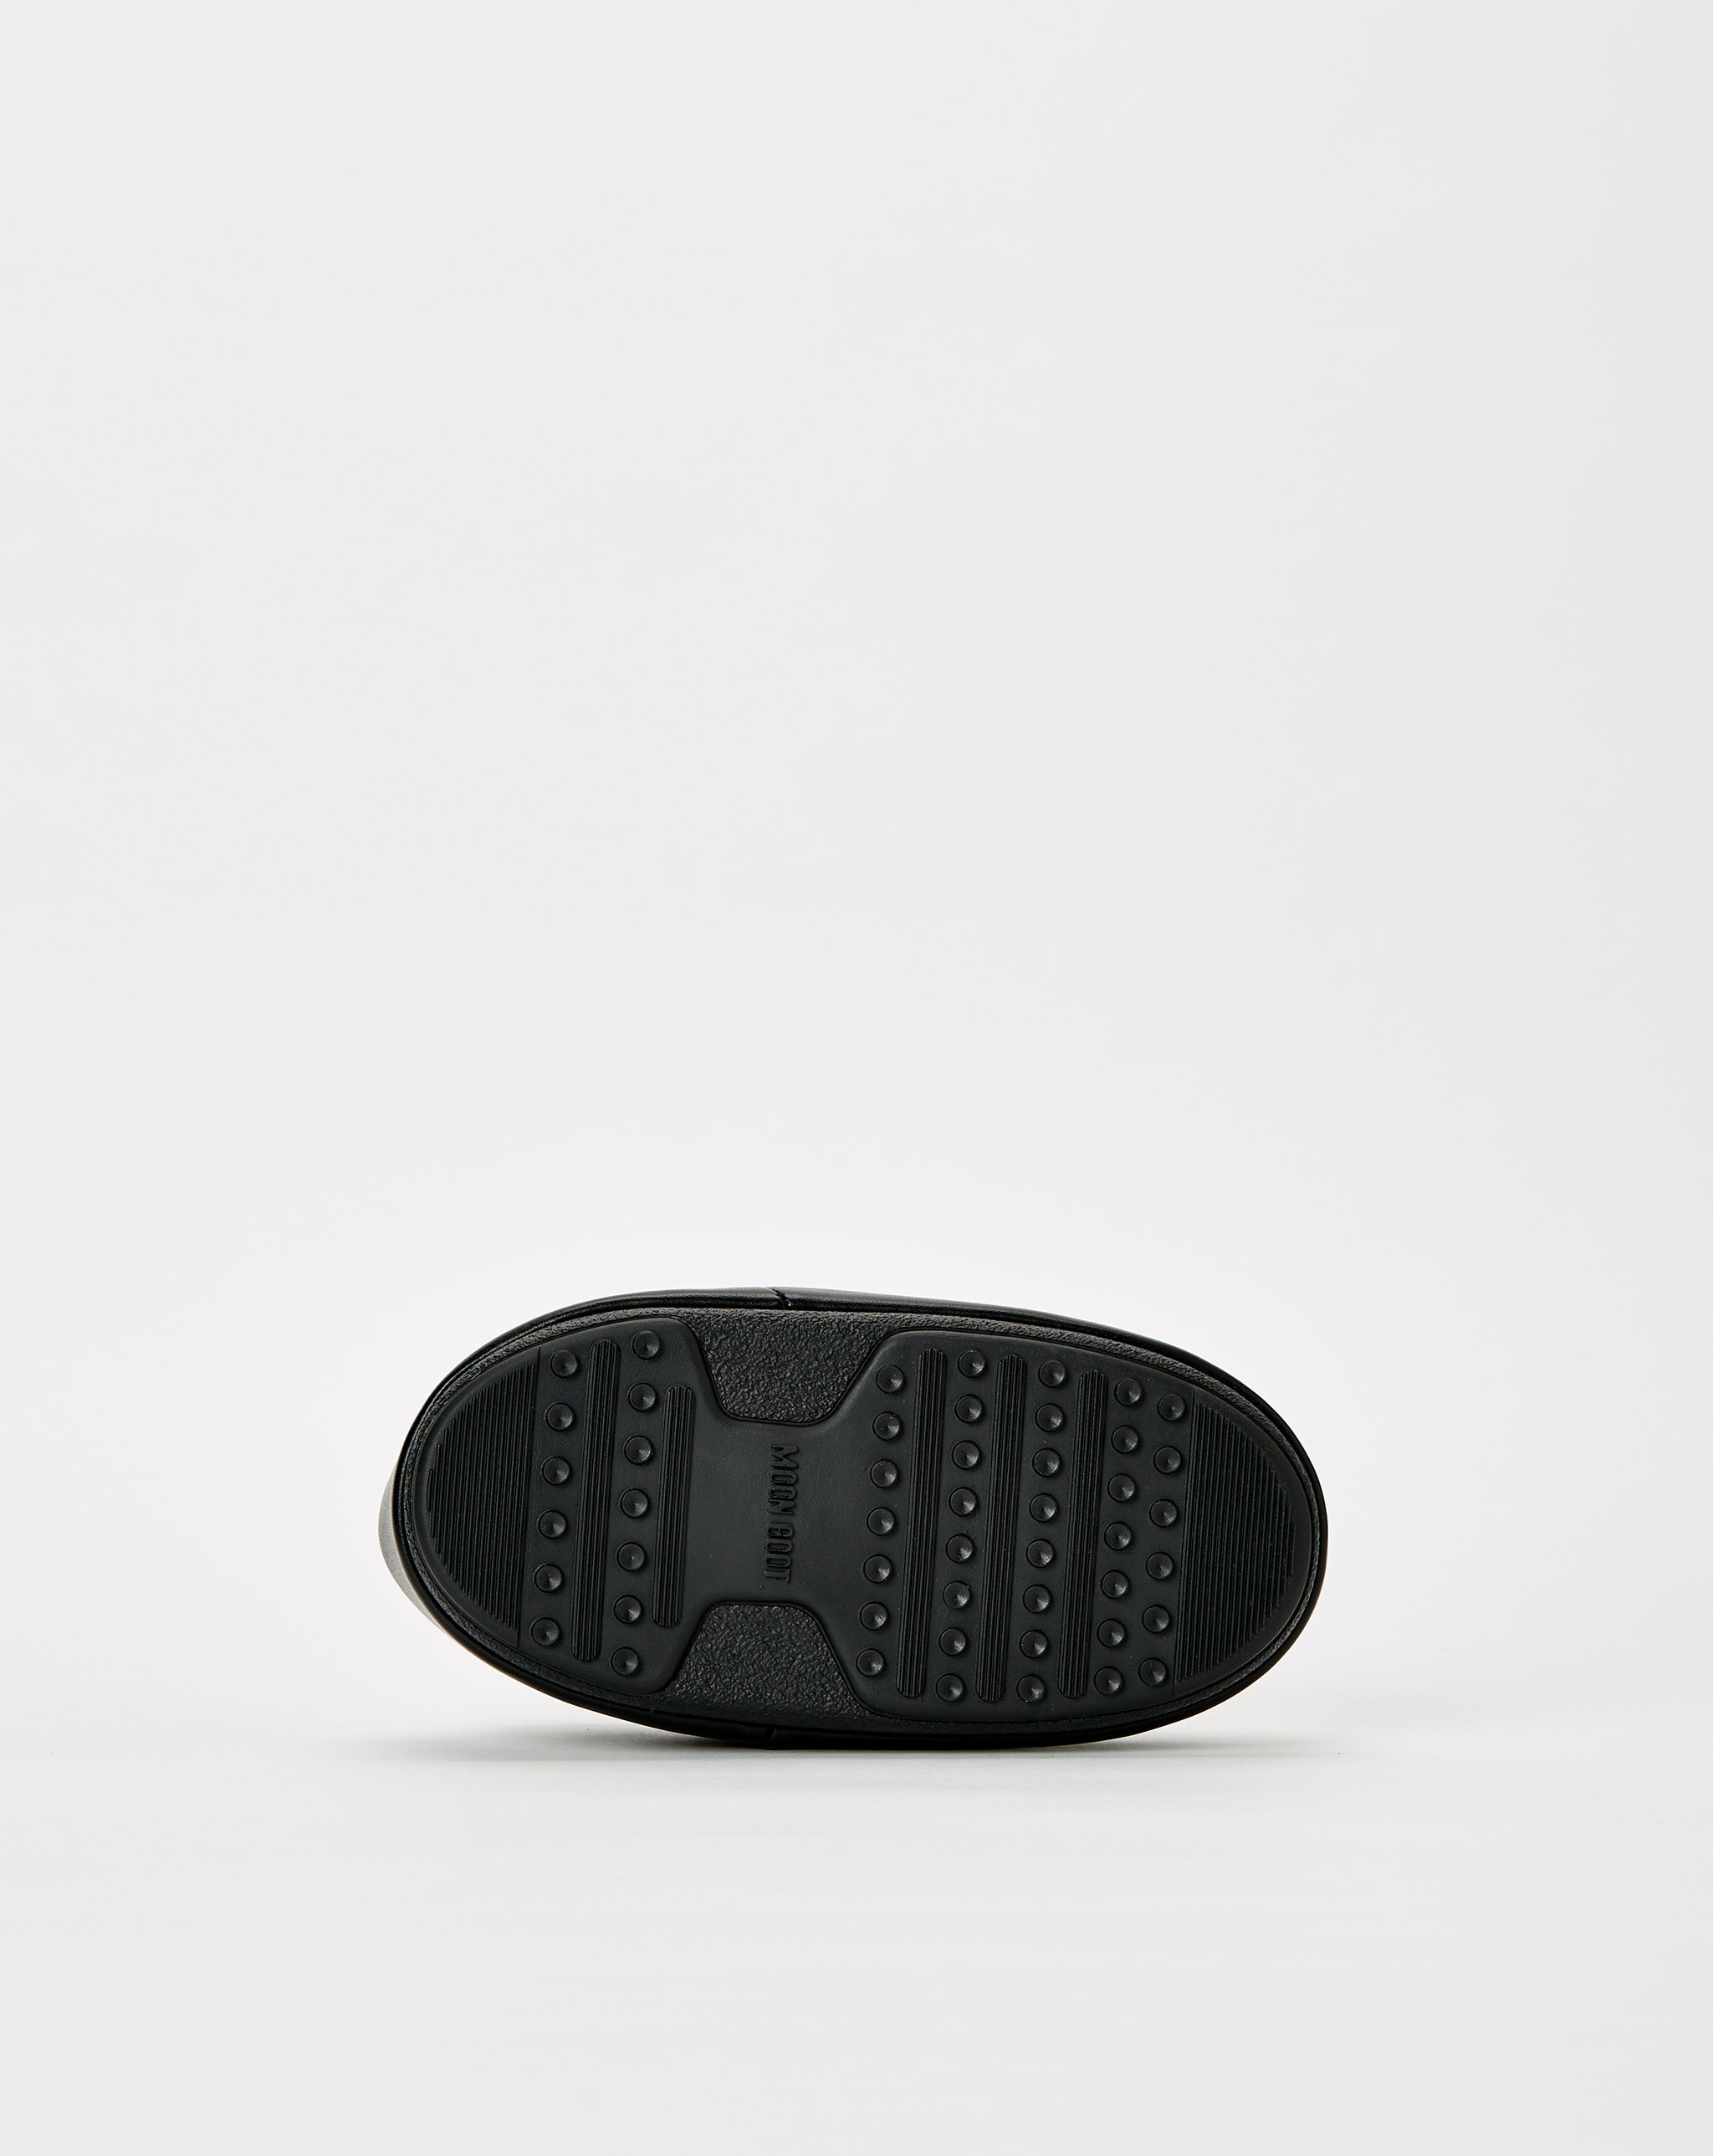 Moon Boot zapatillas de running Nike mujer distancias cortas moradas mejor valoradas  - Cheap Cerbe Jordan outlet